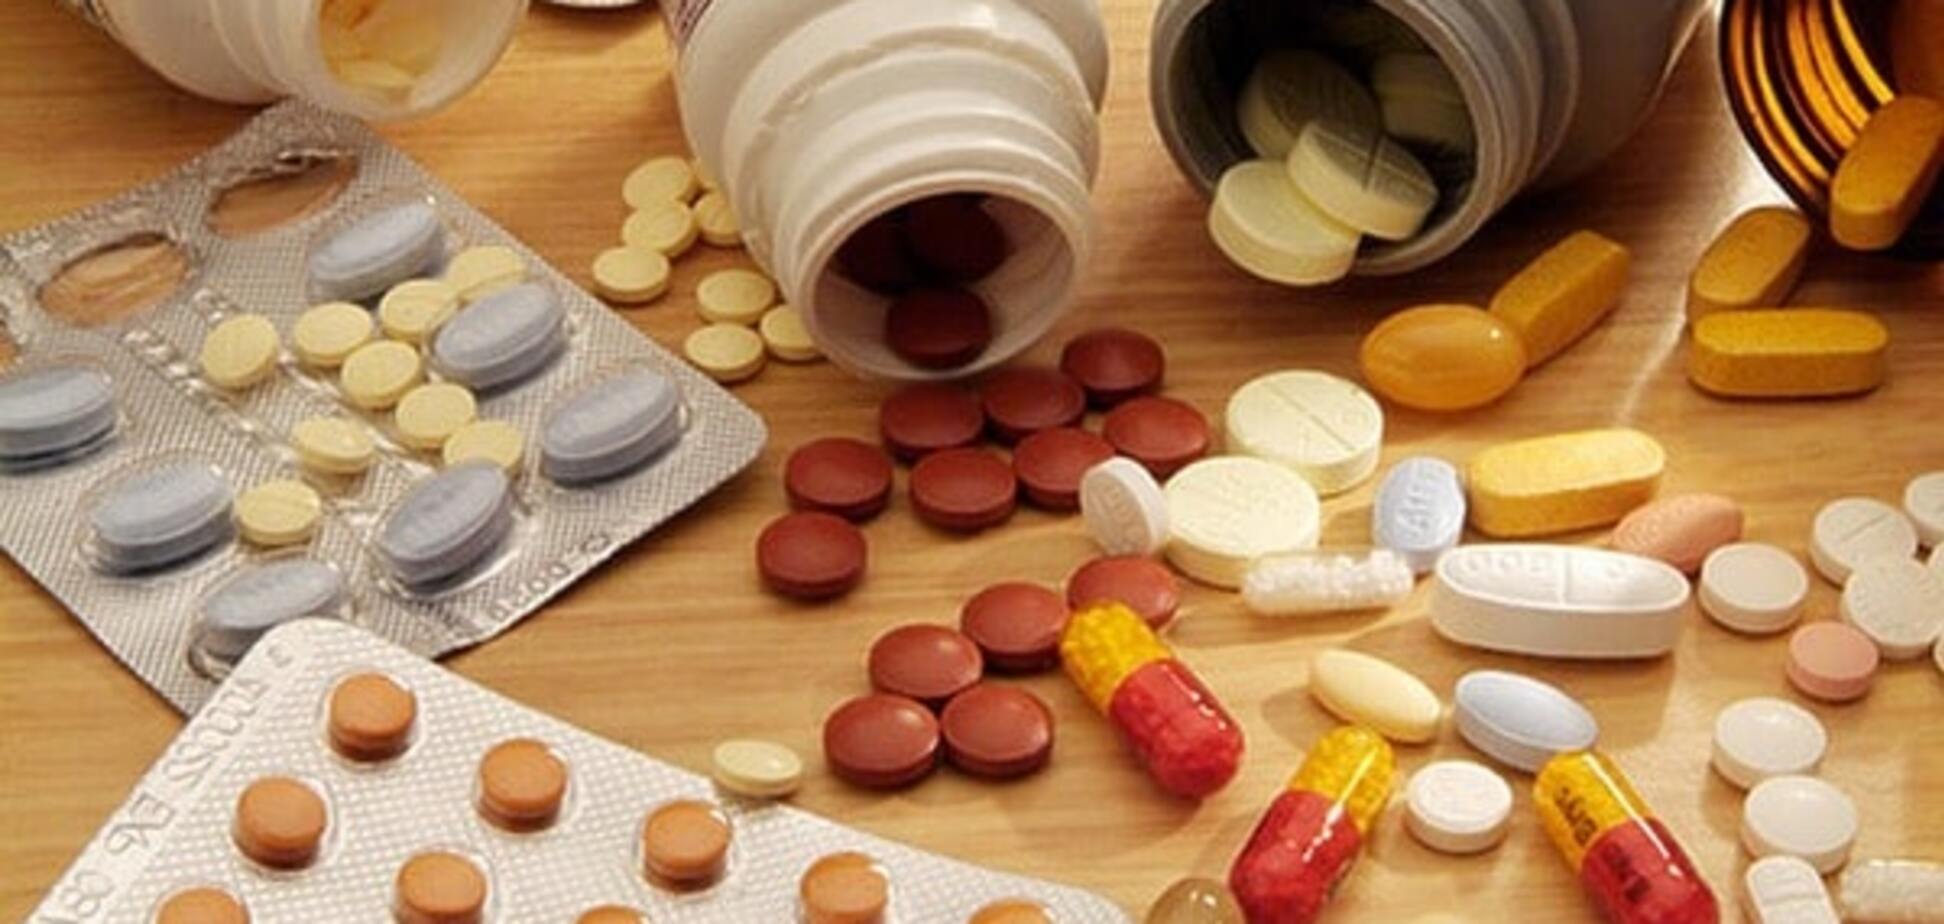 Анализ закупок лекарств: цены прежние, а количество сократилось на четверть